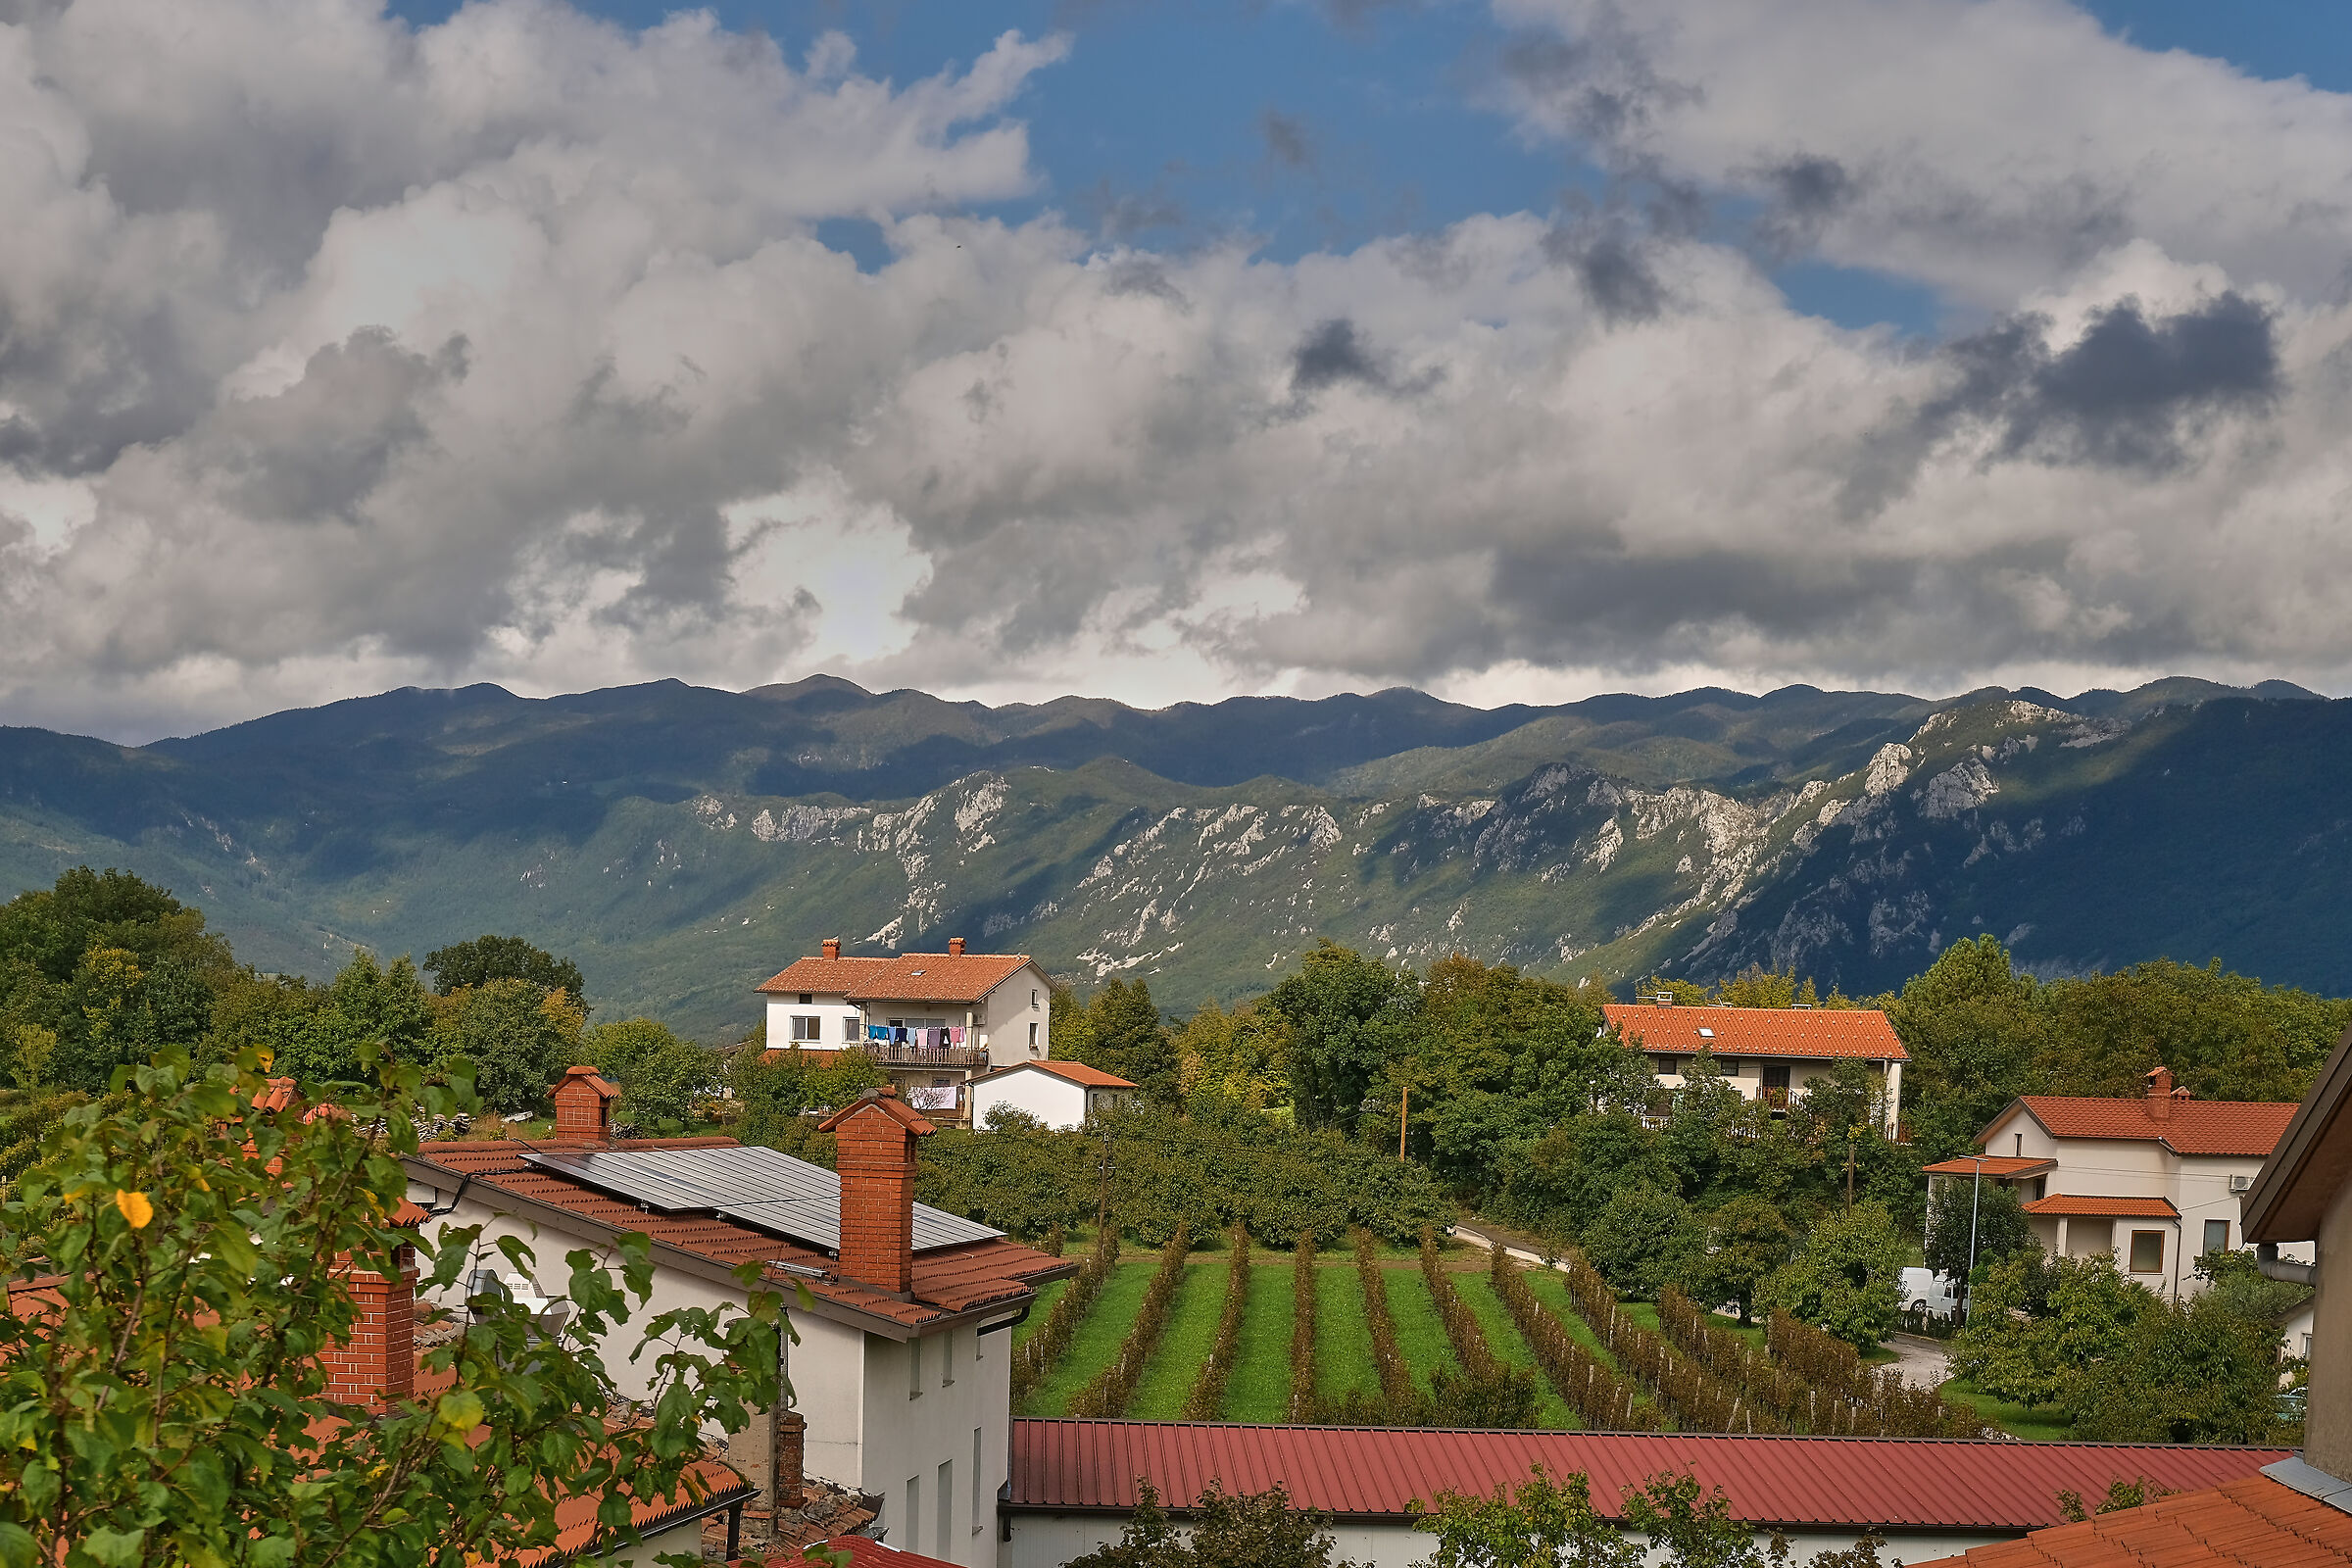 Village of Planina above Ajdovcina...